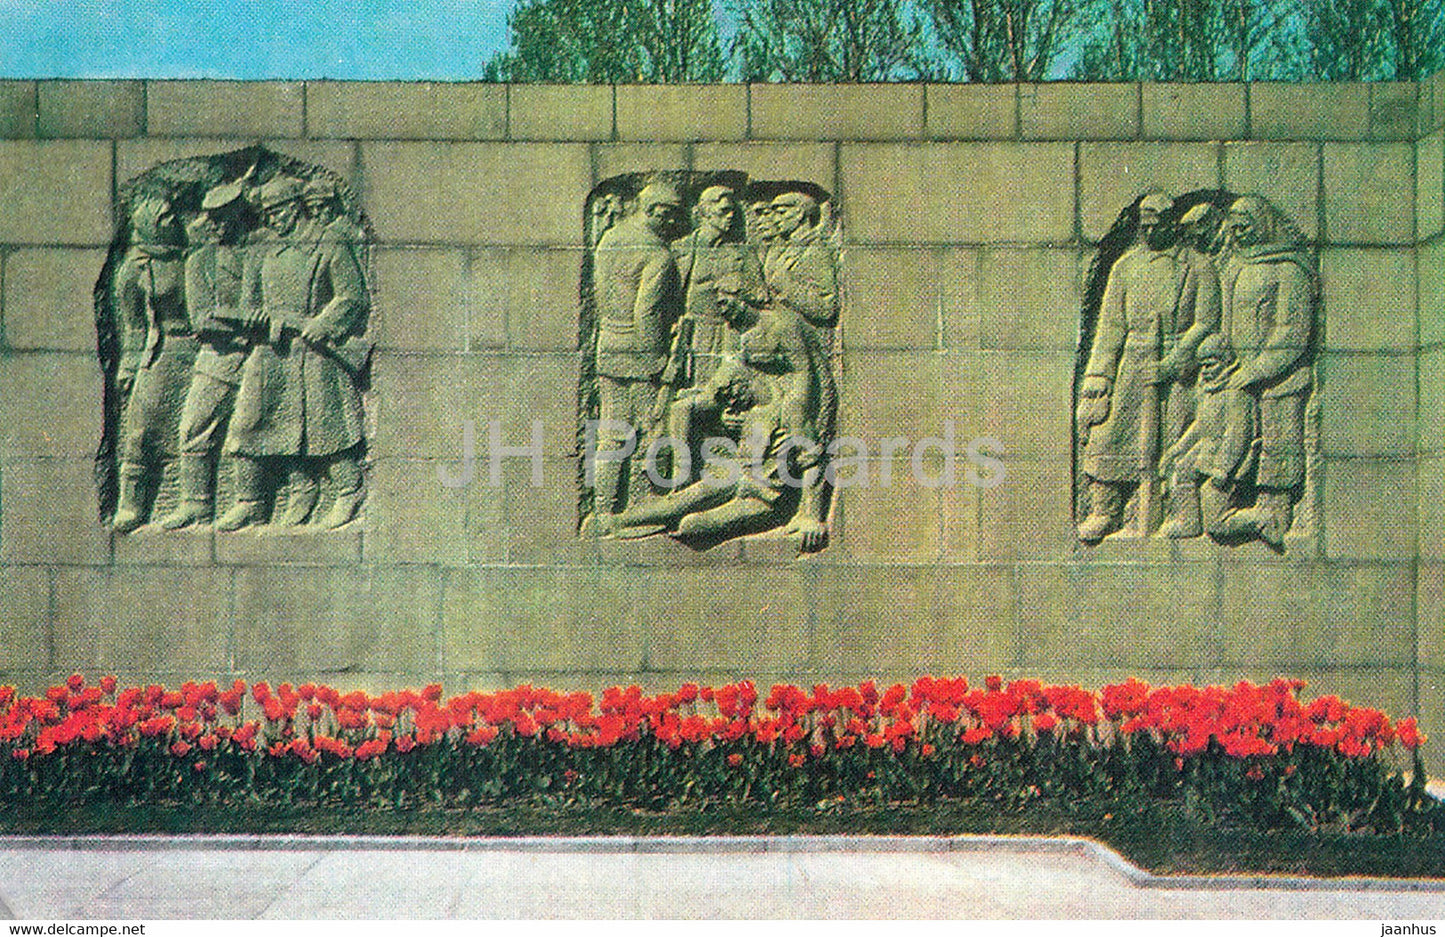 Leningrad - St Petersburg - Piskaryovskoye Memorial Cemetery - sculptural reliefs of stele - 1981 - Russia USSR - unused - JH Postcards